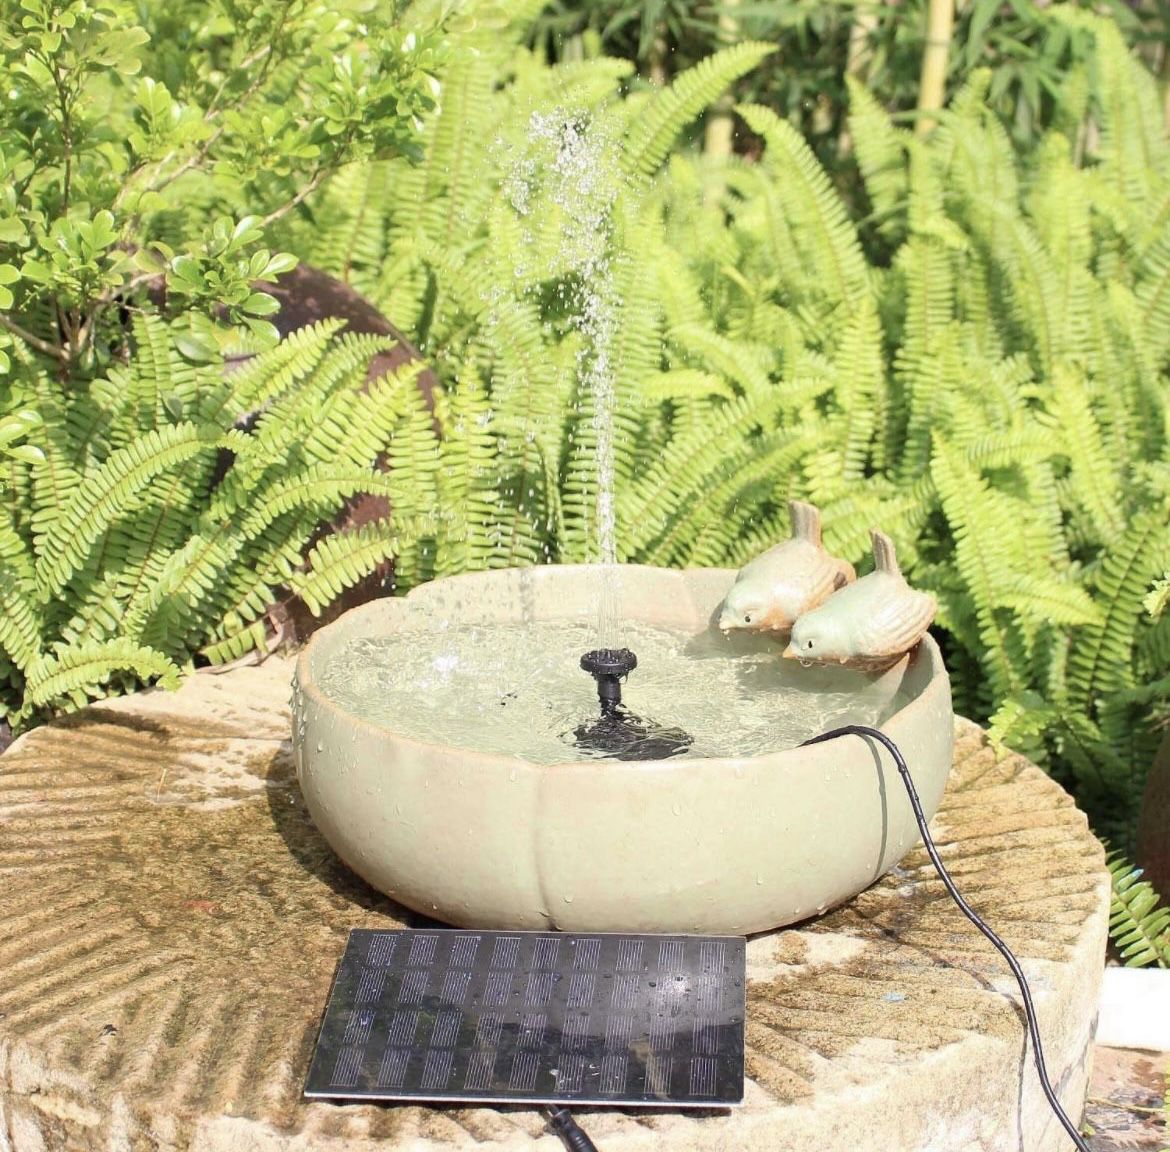 Solar Fountain, Solar Bird Bath Fountains with 4 Sprinkler Heads for Birdbath Garden Pond Pool Lawn Tank, 1.8W Solar birdbath Fountain